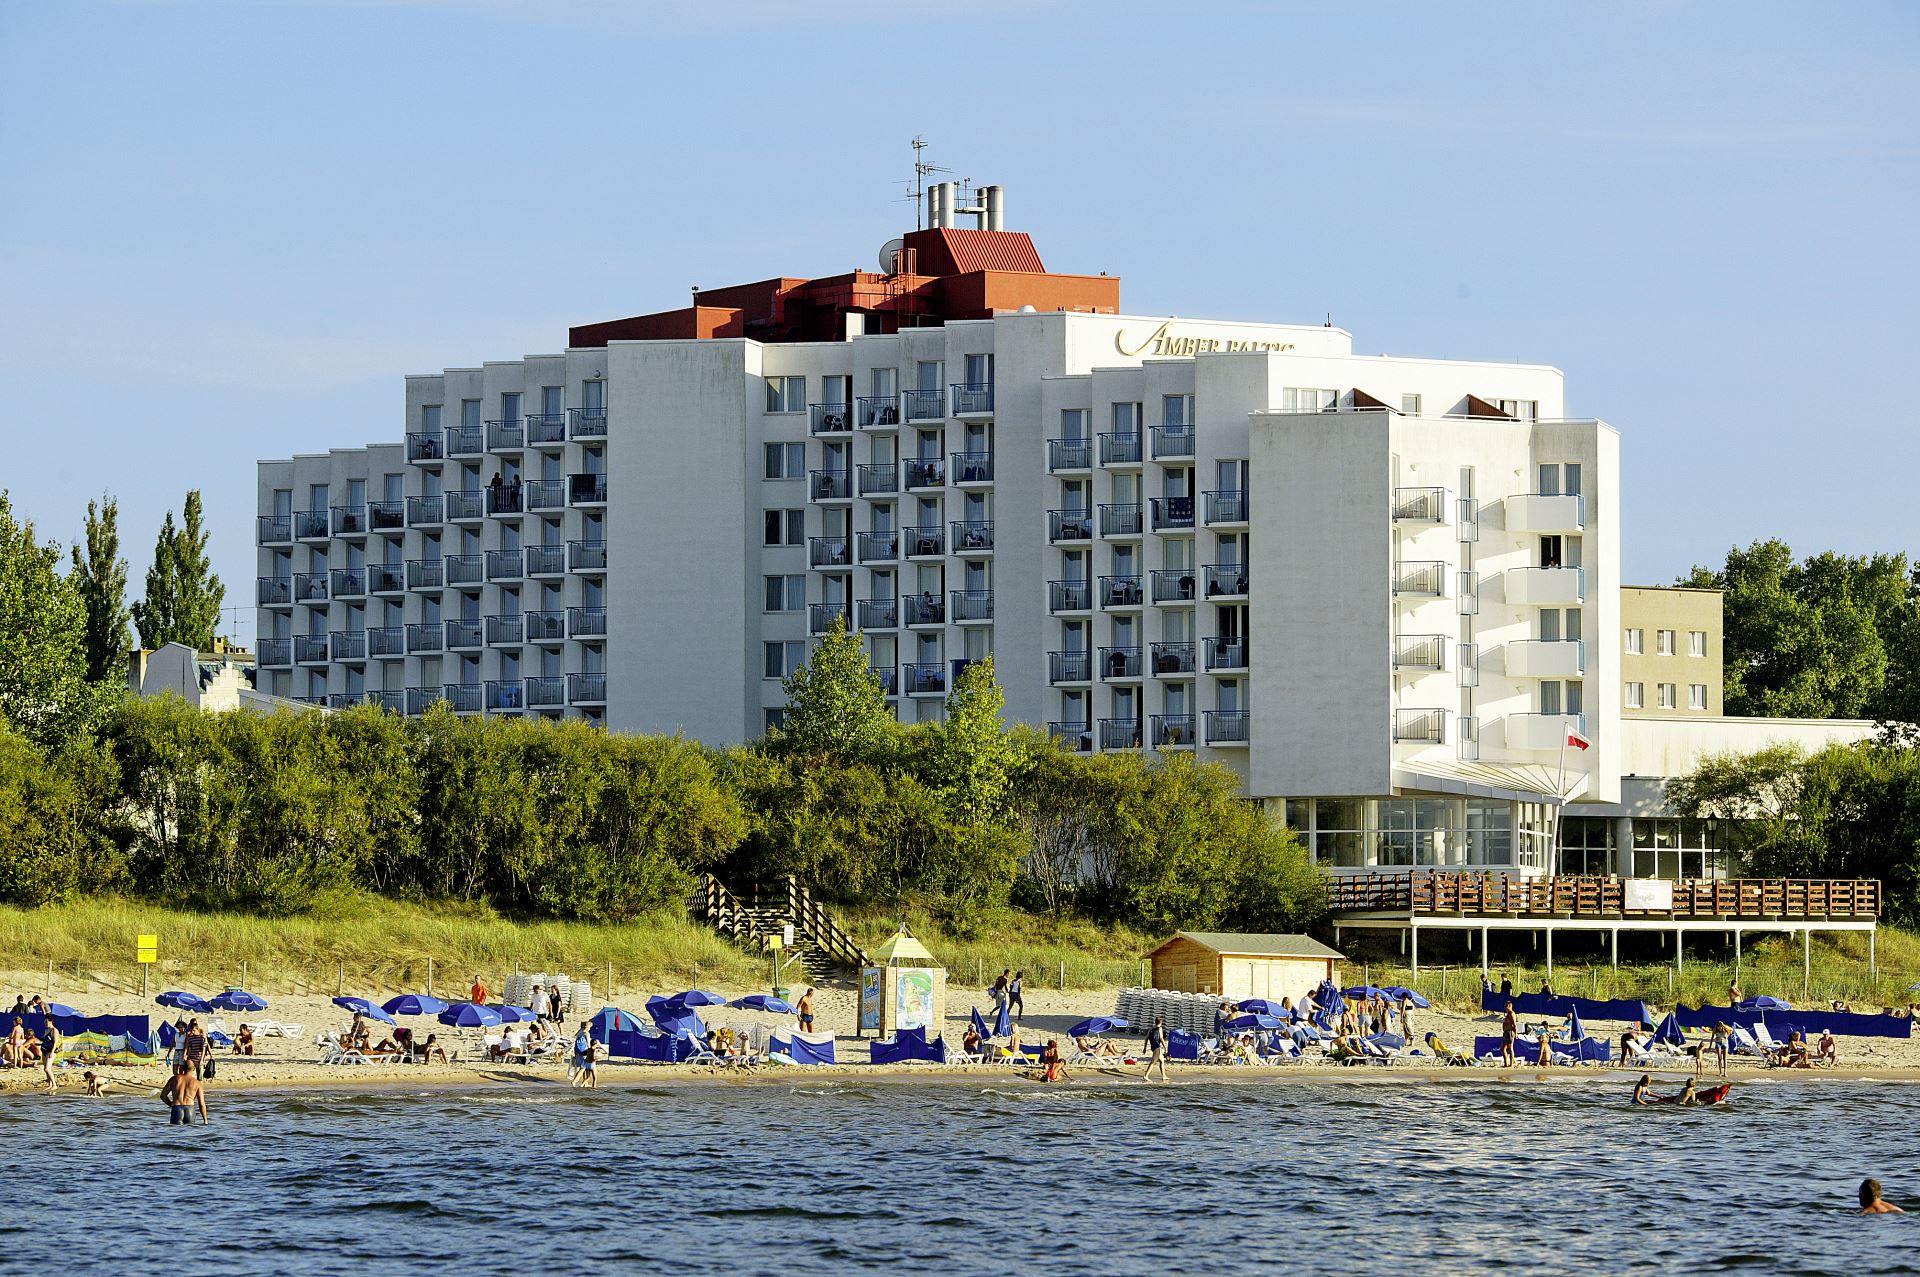 vienna-house-amber-baltic-miedzyzdroje-pomorze-polska-opis-hotelu